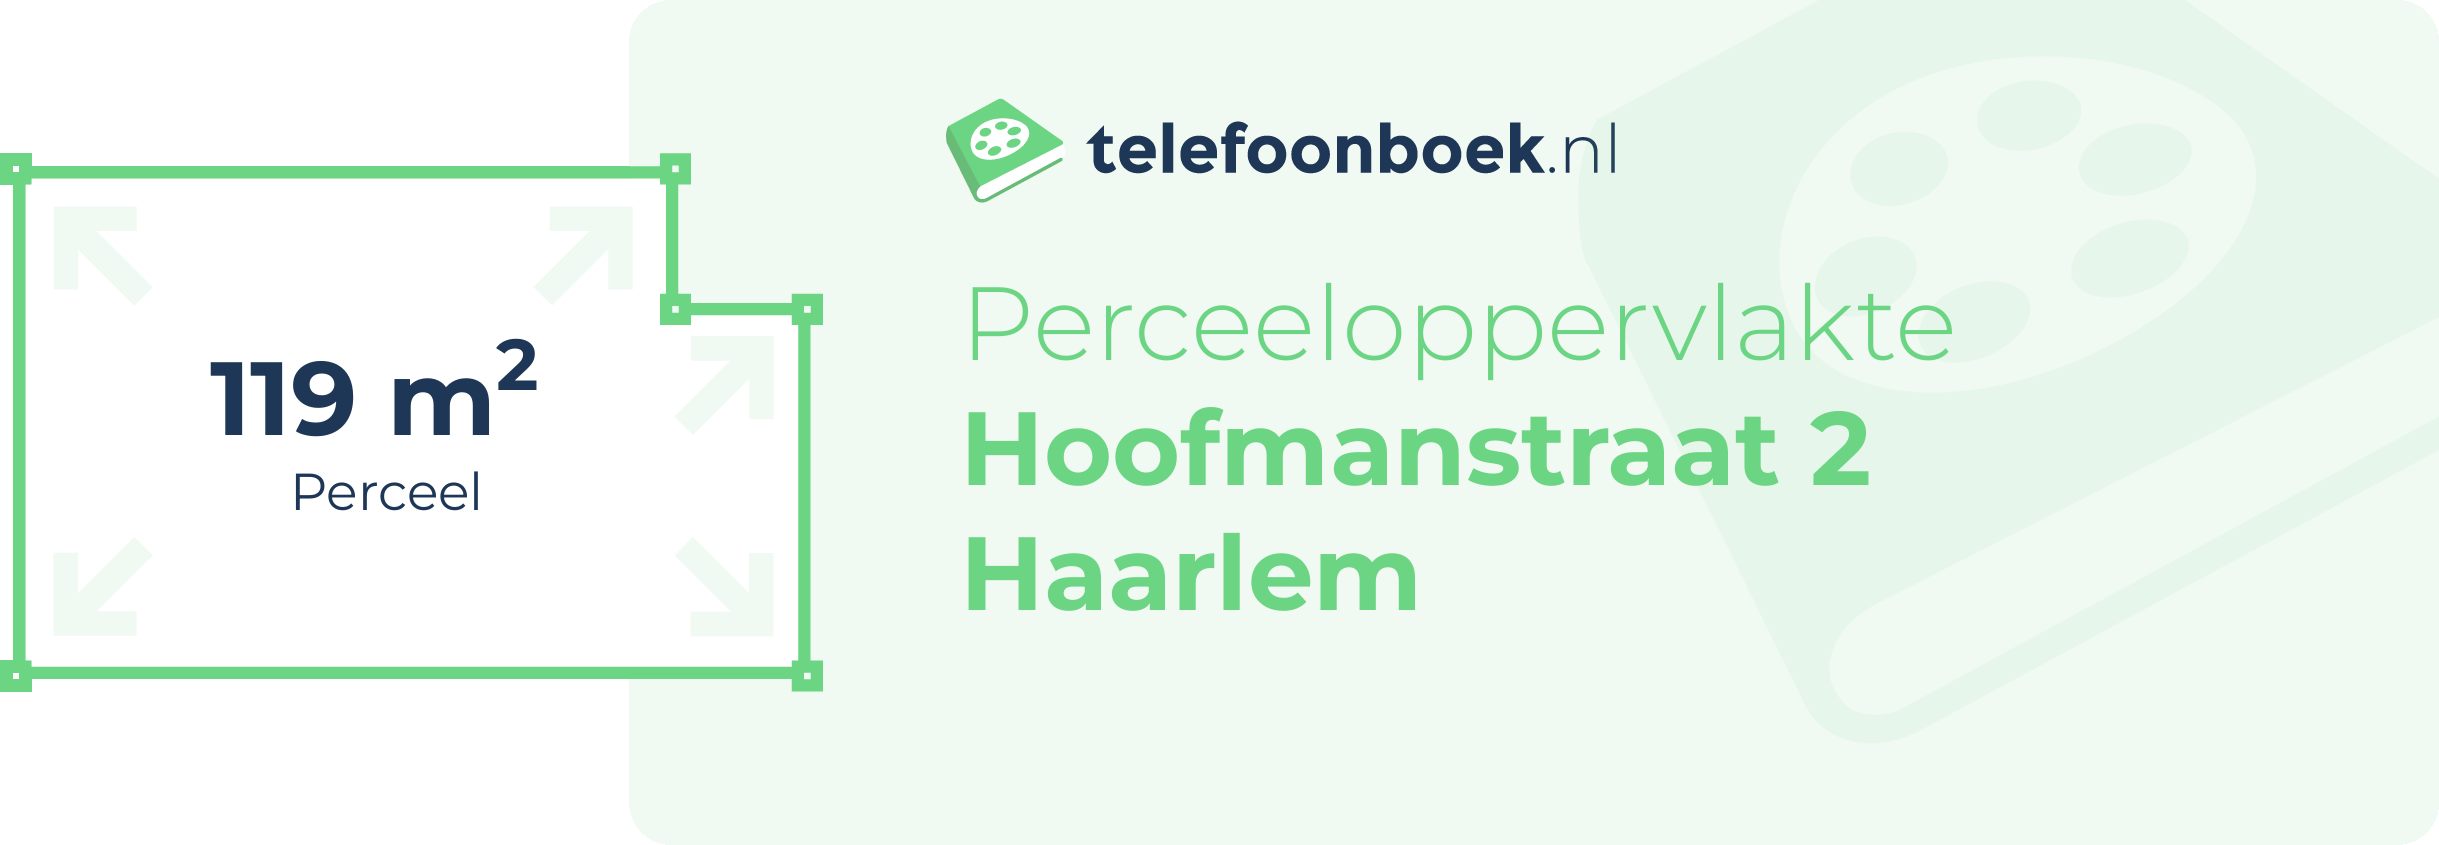 Perceeloppervlakte Hoofmanstraat 2 Haarlem